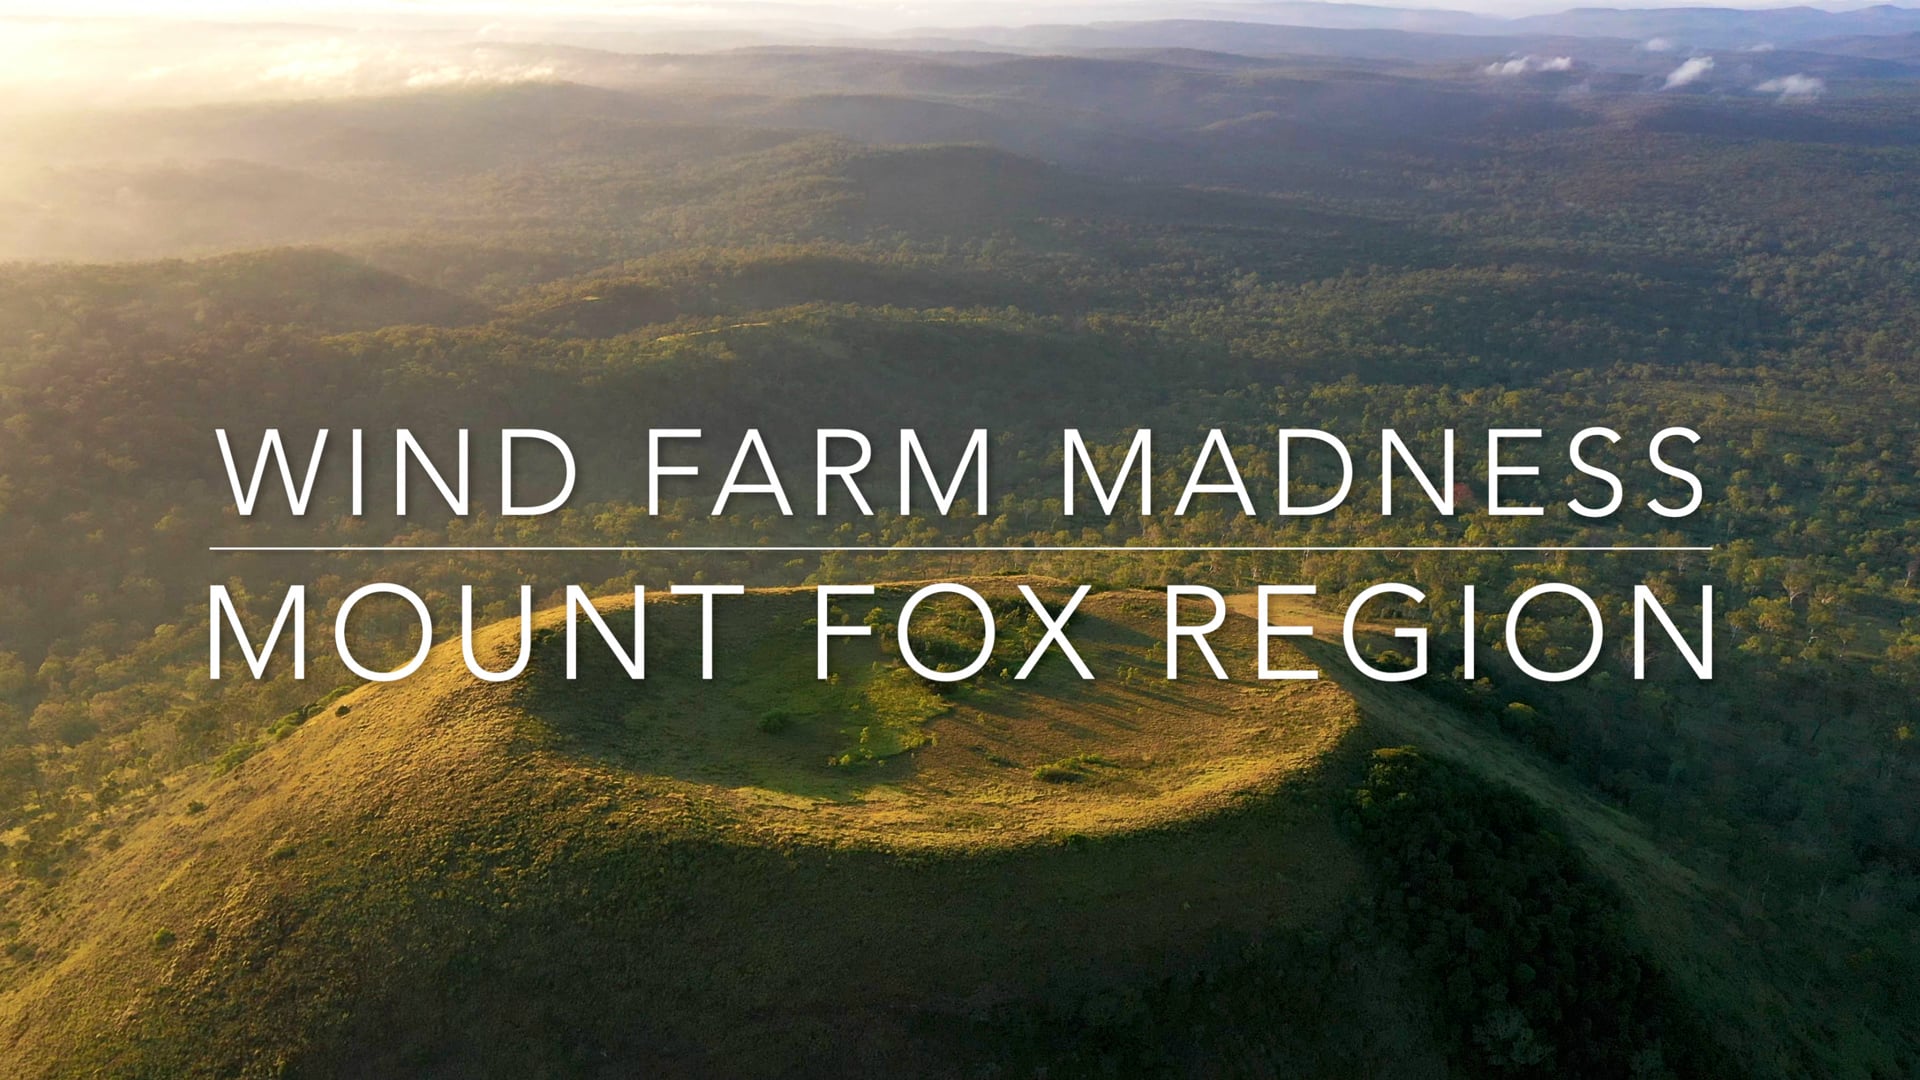 Wind Farm madness - Mount Fox region